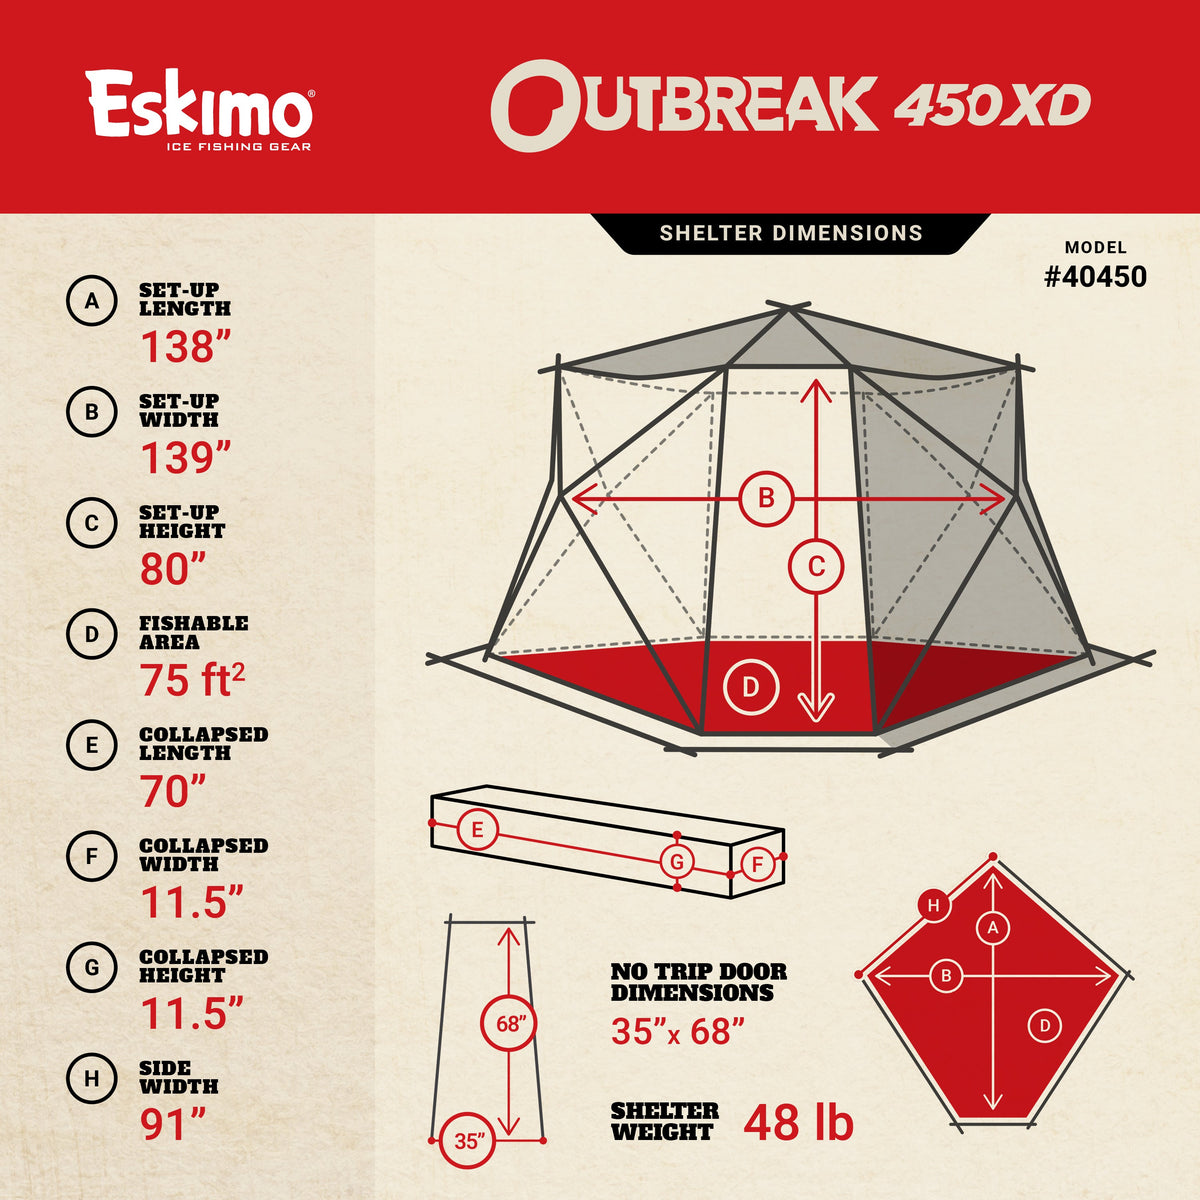 Eskimo Outbreak 450XD